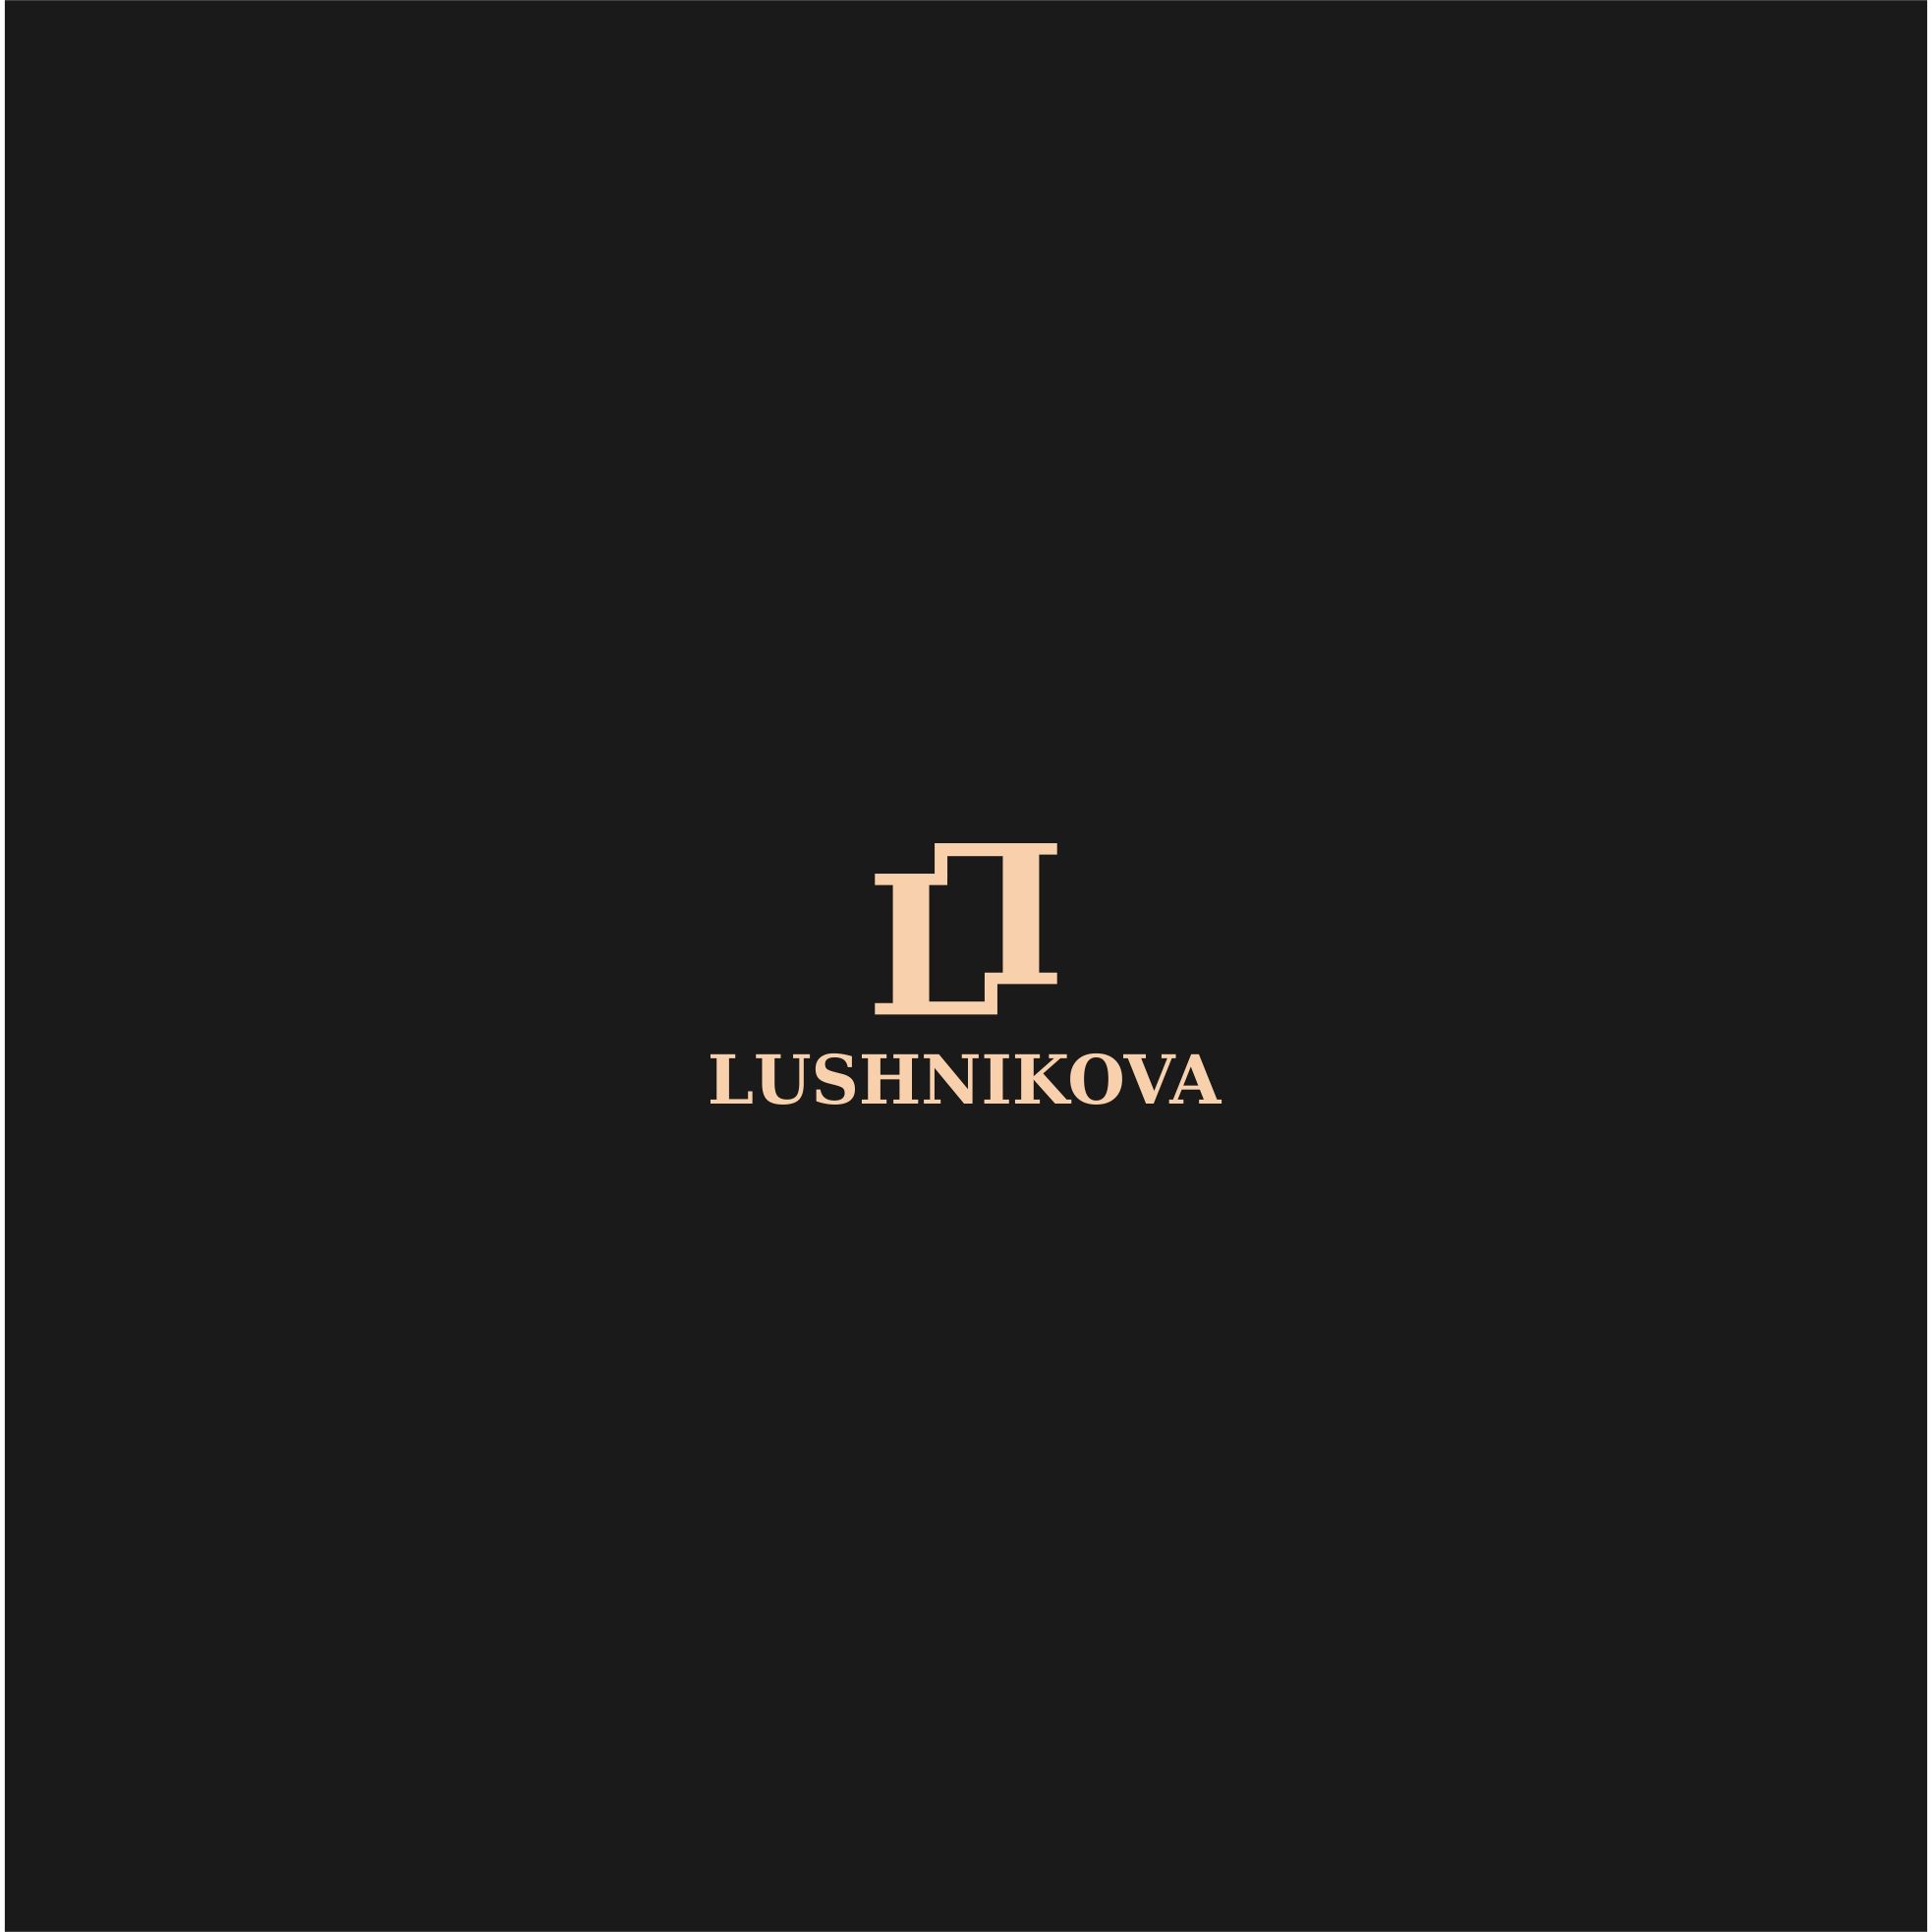 Лого и фирменный стиль для Lushnikova - дизайнер serz4868